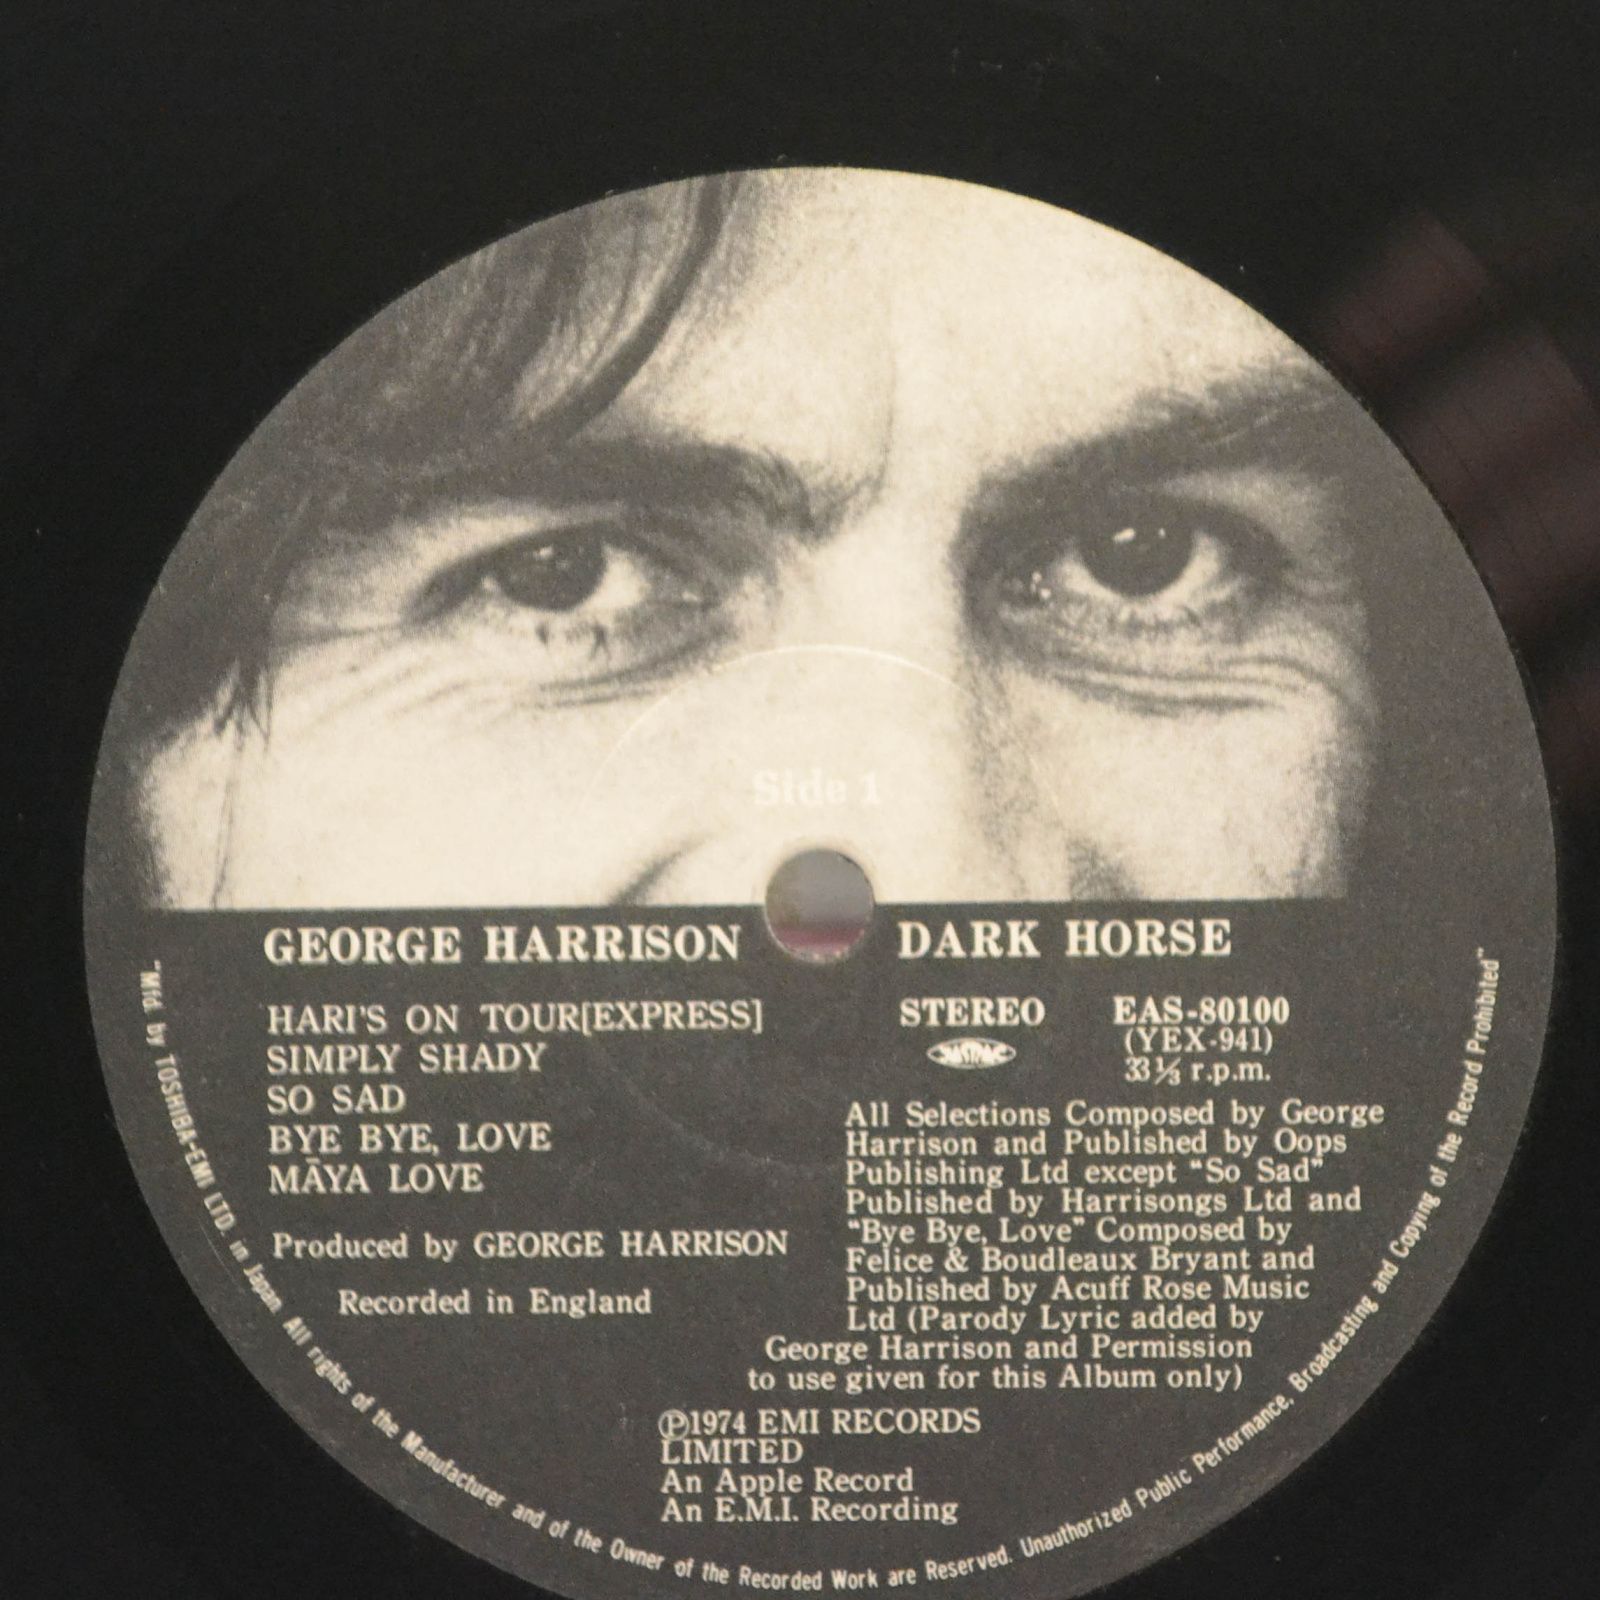 George Harrison — Dark Horse, 1974